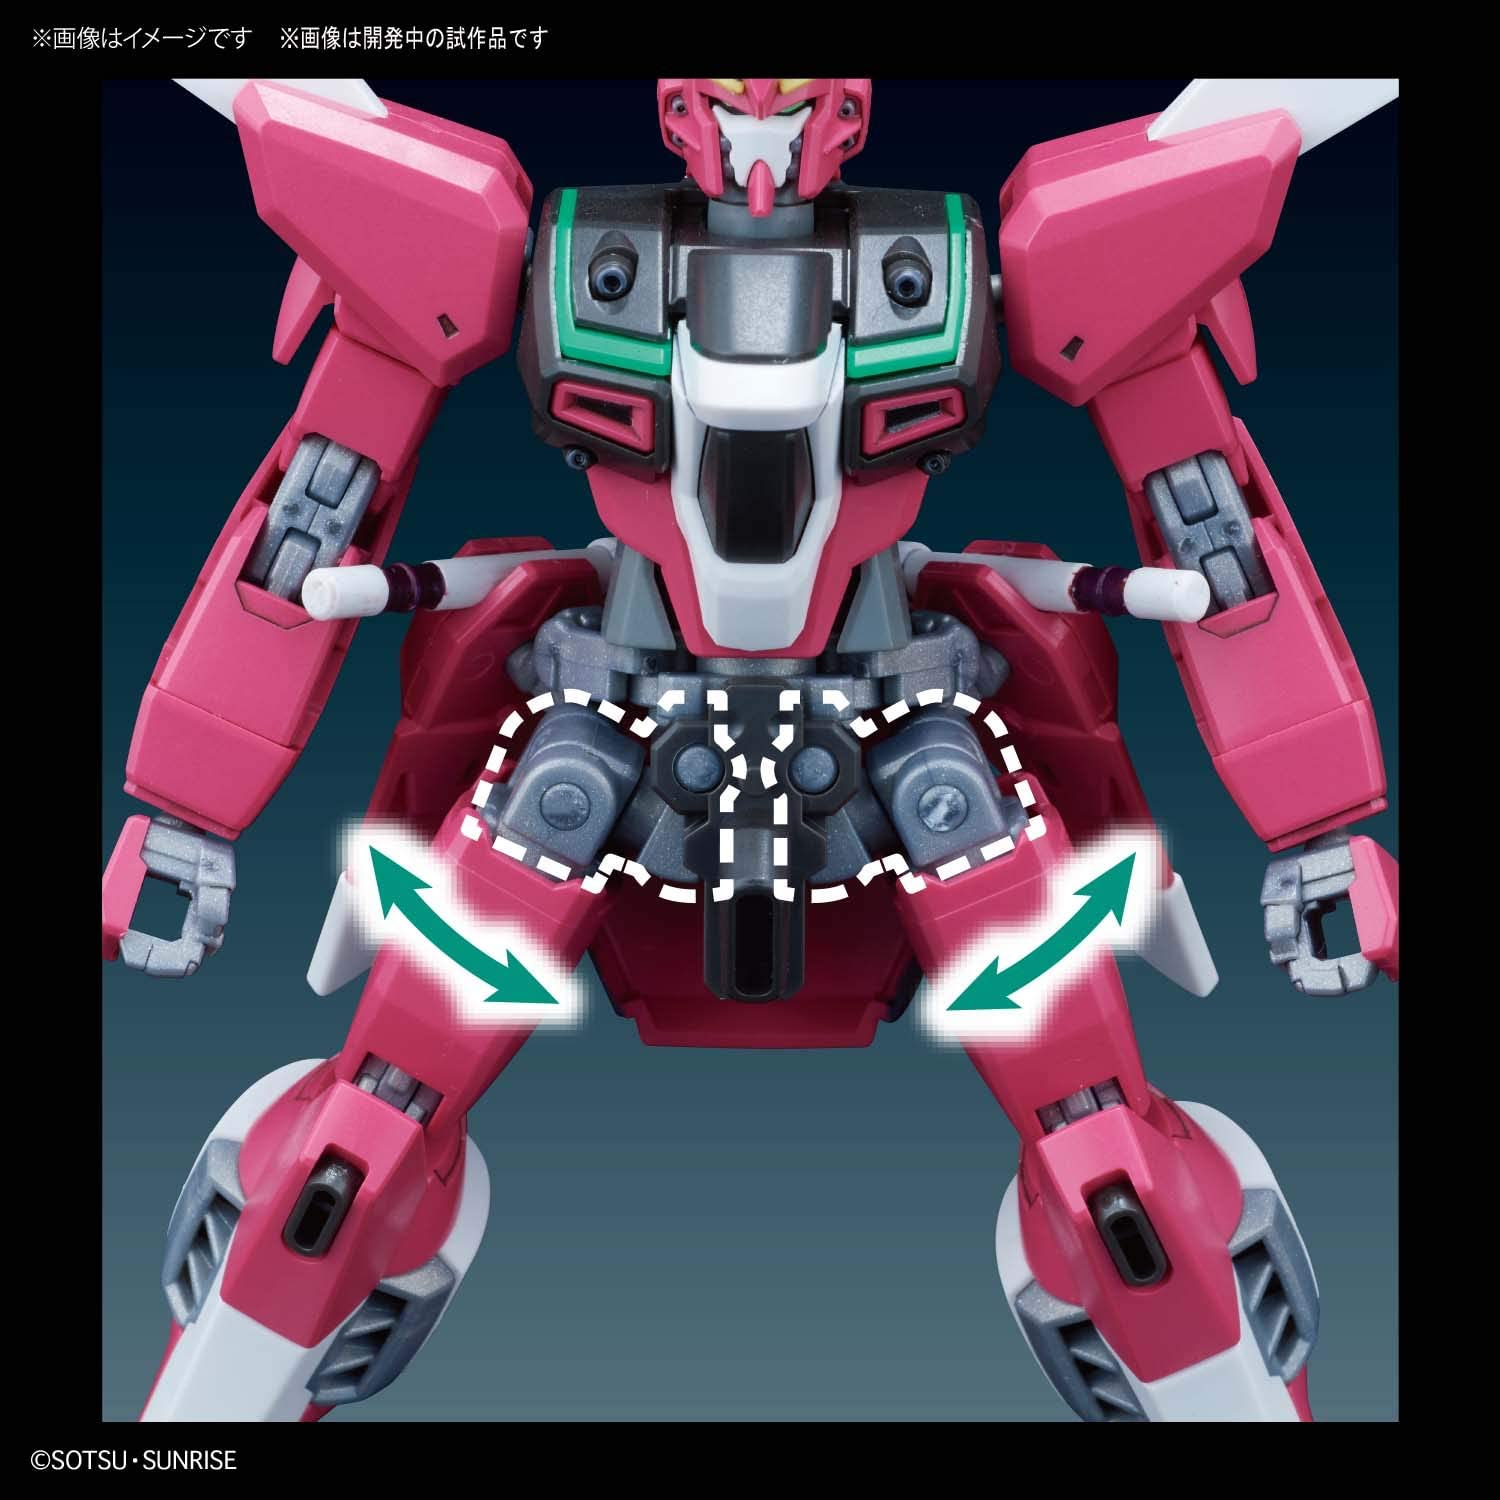 HGCE - ZGMF-X19A Infinite Justice Gundam